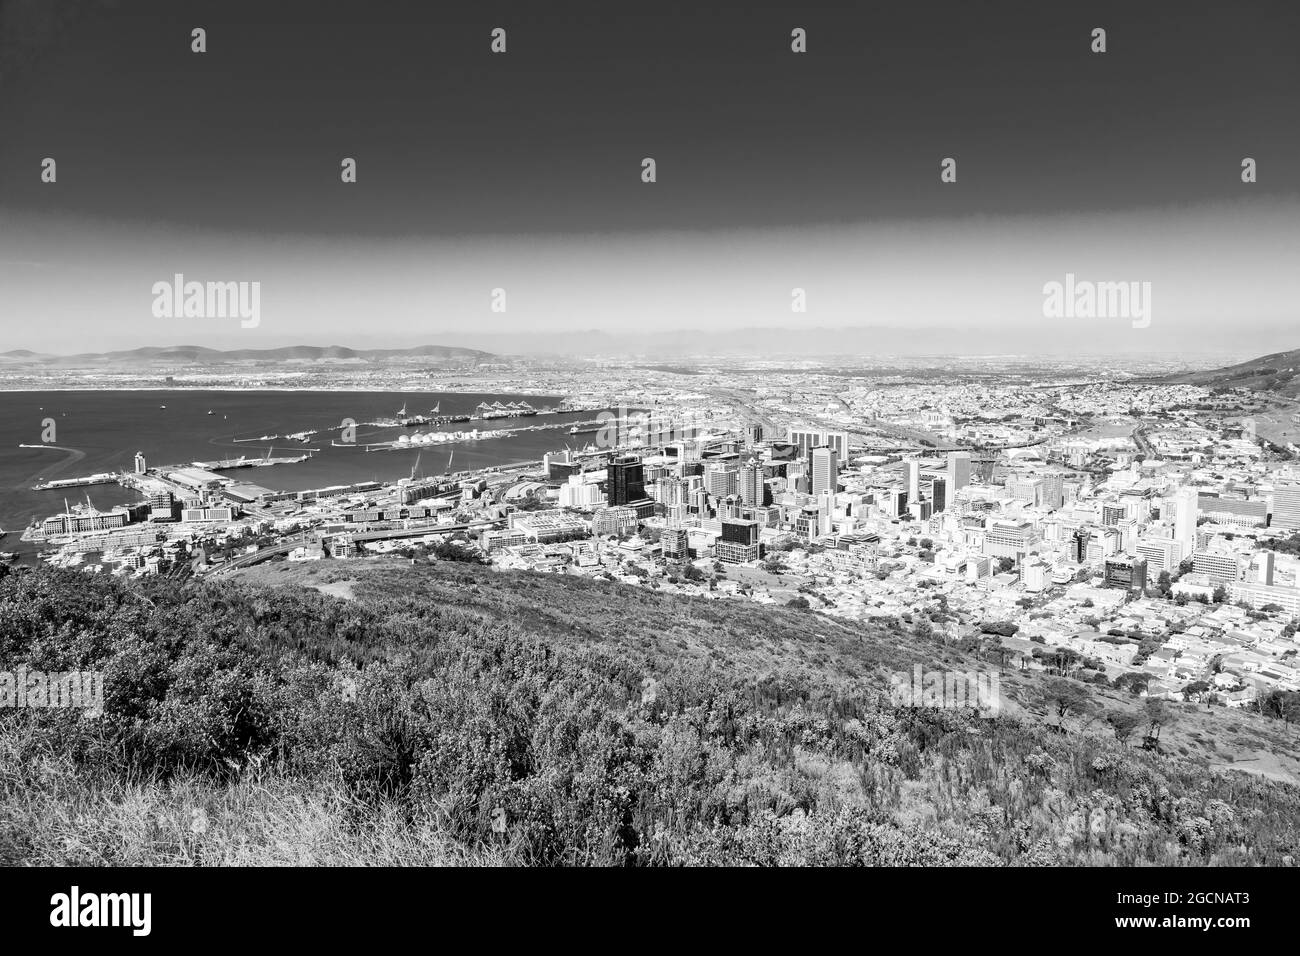 CAPE TOWN, AFRIQUE DU SUD - 05 janvier 2021 : une échelle de gris d'une vue en hauteur du port de Cape Town et du quartier central des affaires en Afrique du Sud Banque D'Images